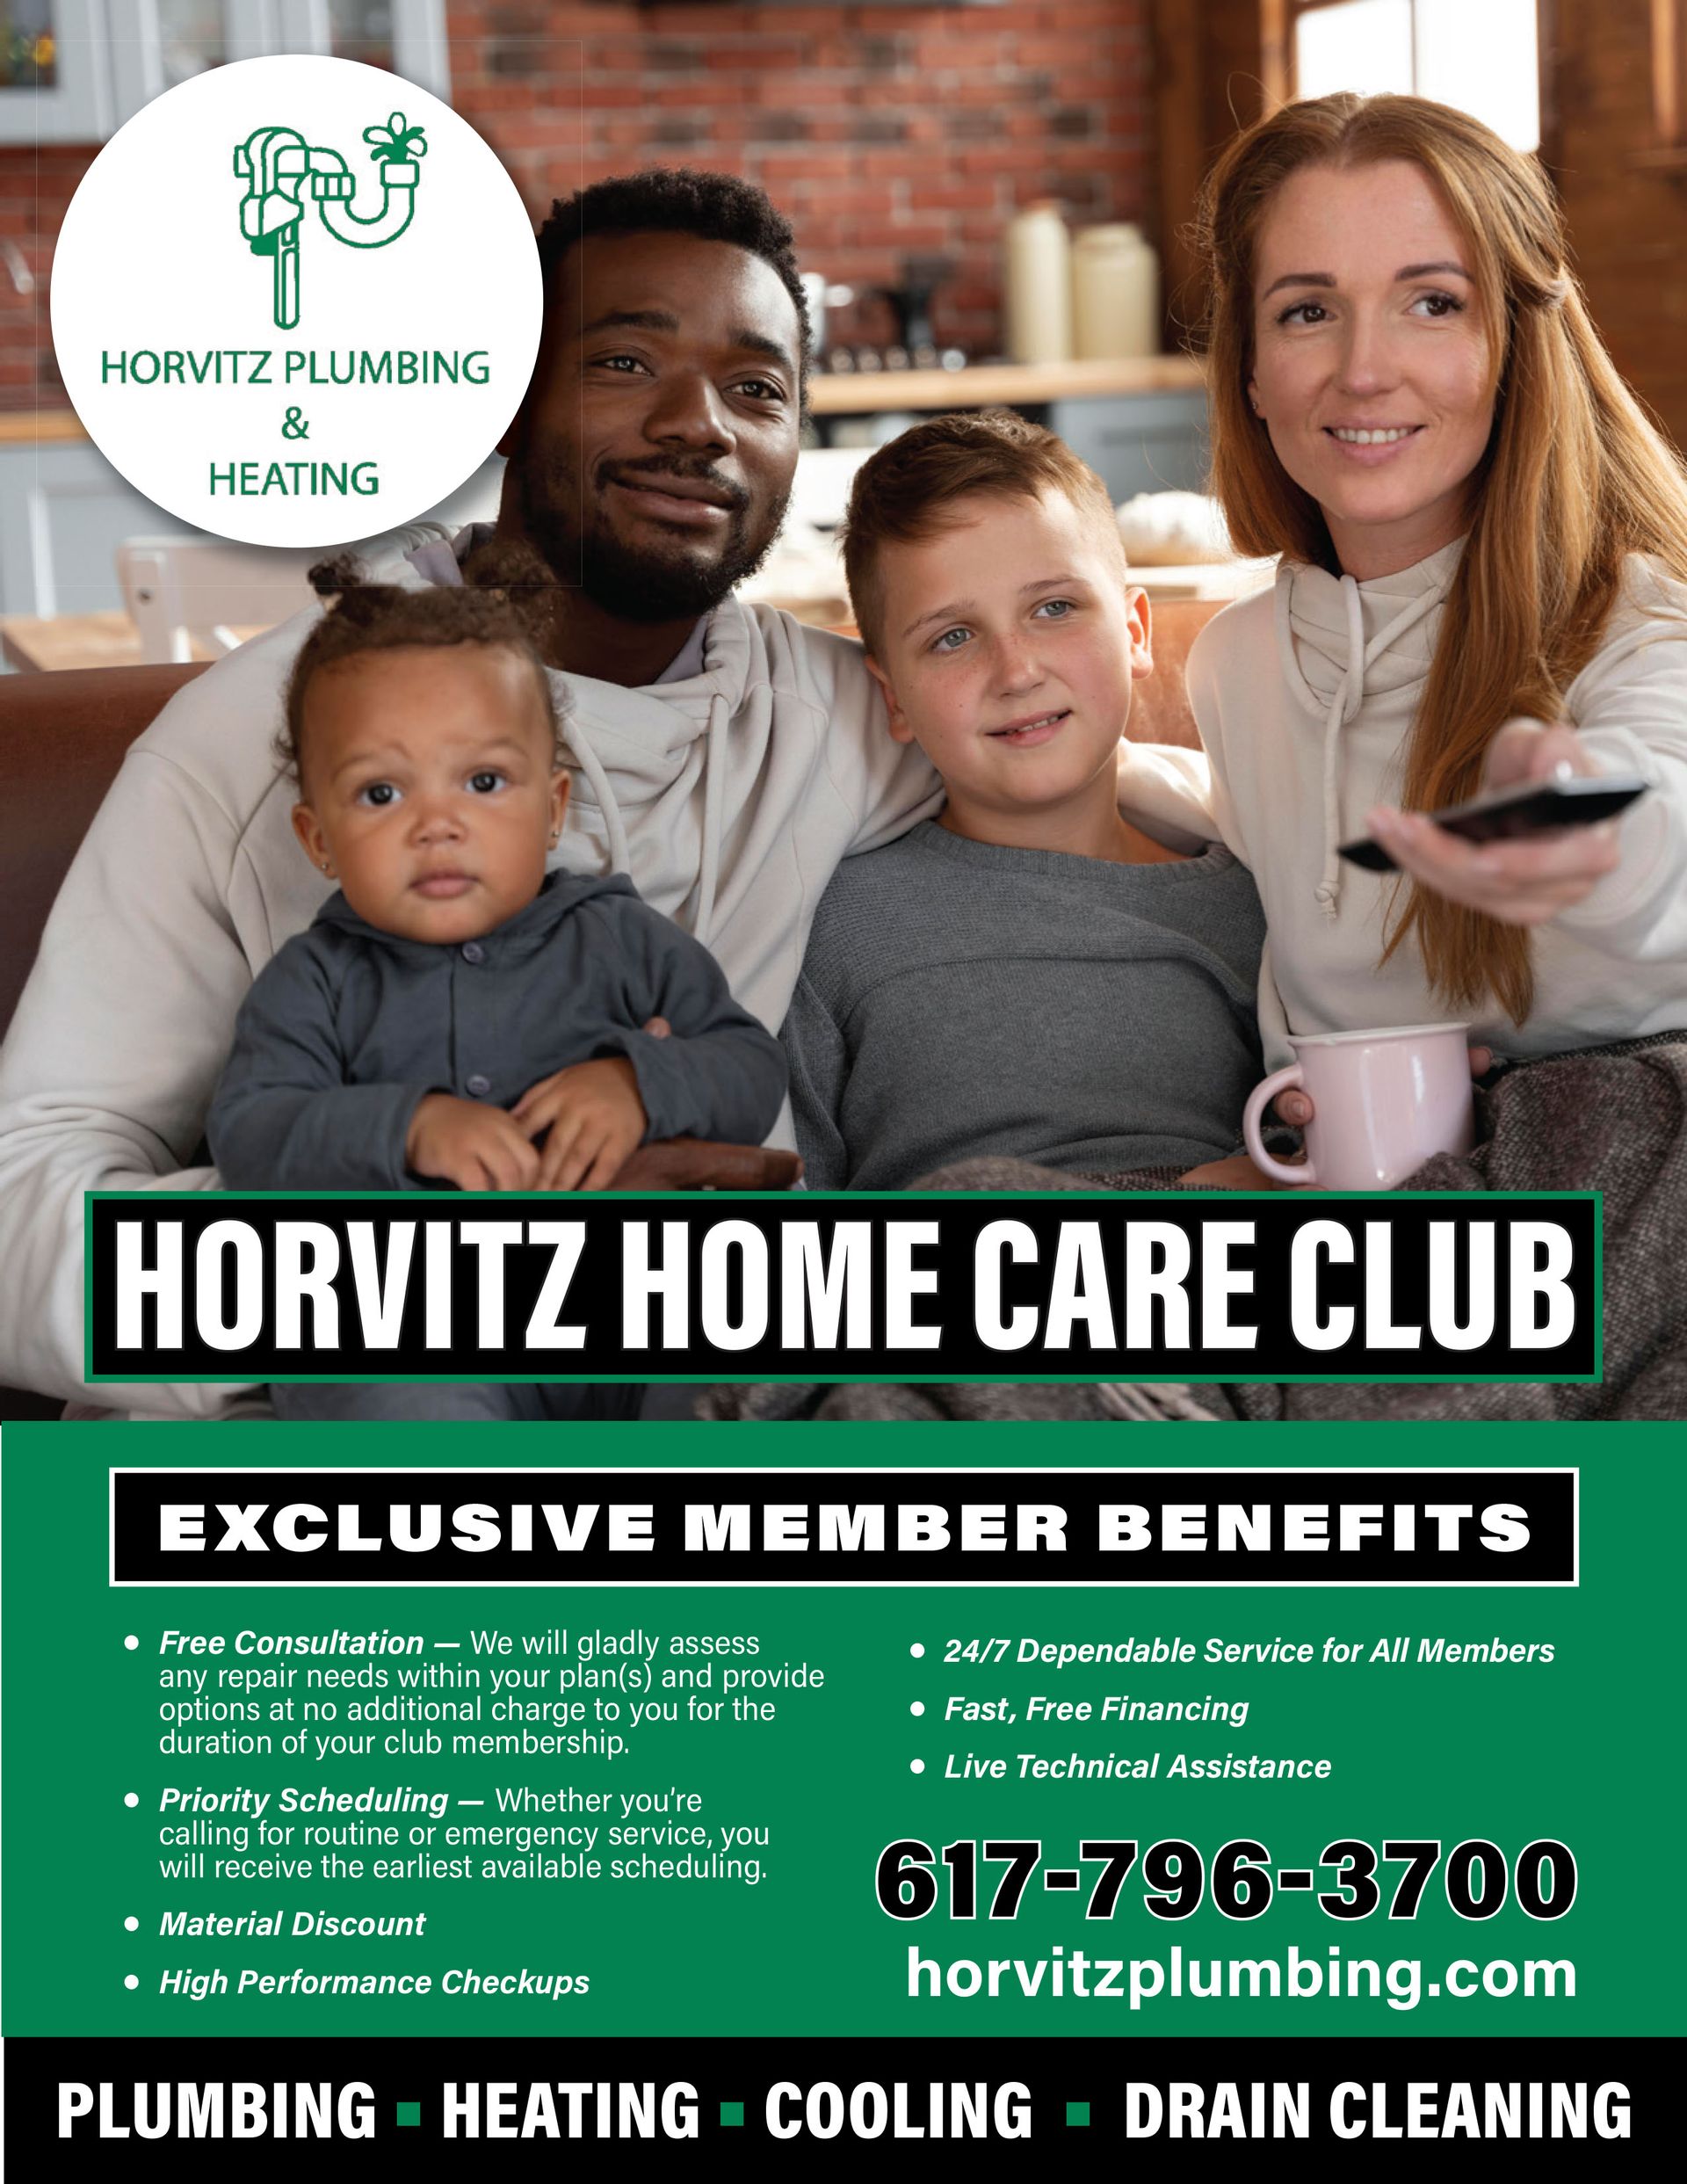 HHCC Membership Benefits